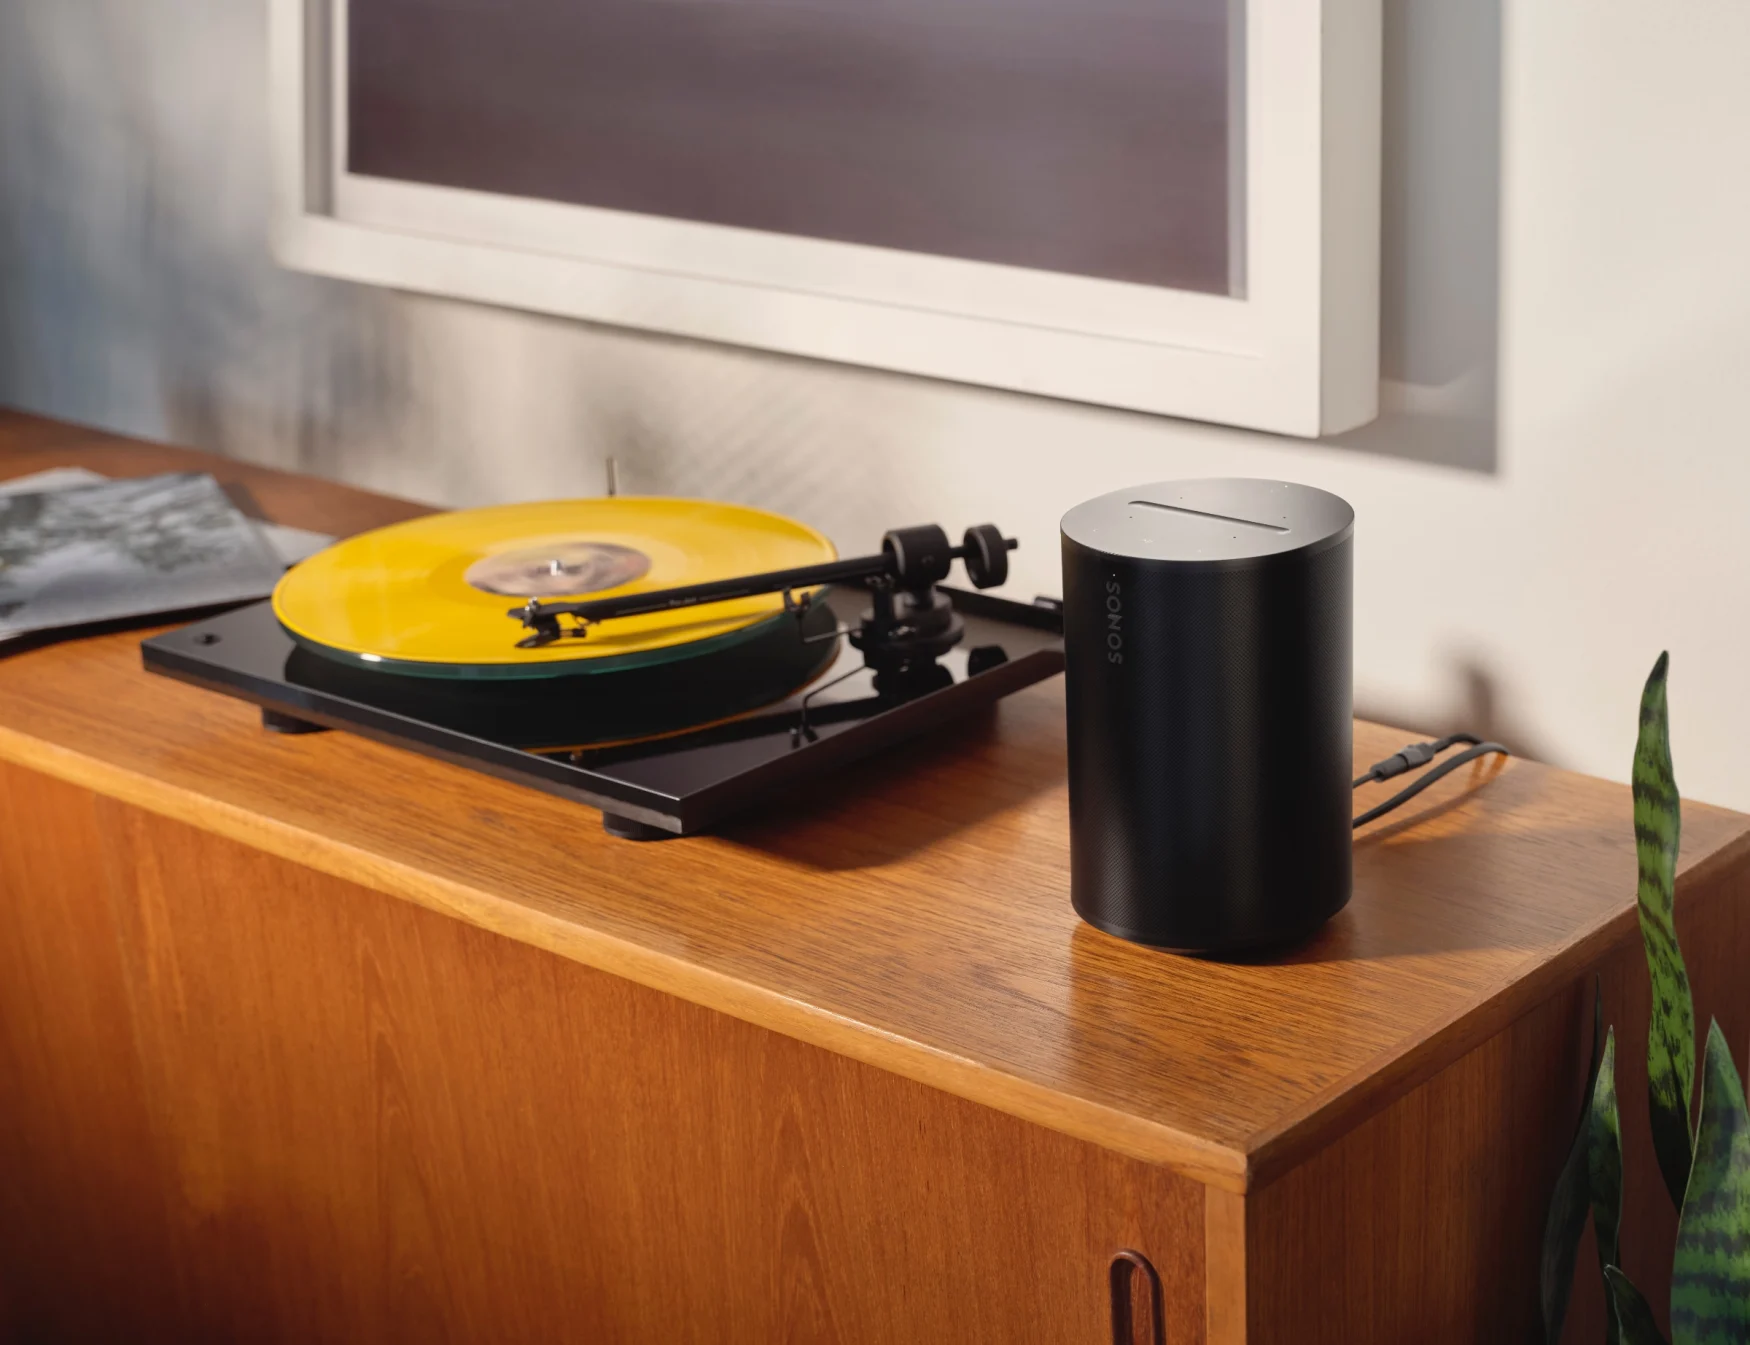 Sonos wprowadza głośniki Era premium od 249 dolarów, które mają konkurować z Apple HomePod i Google Nest